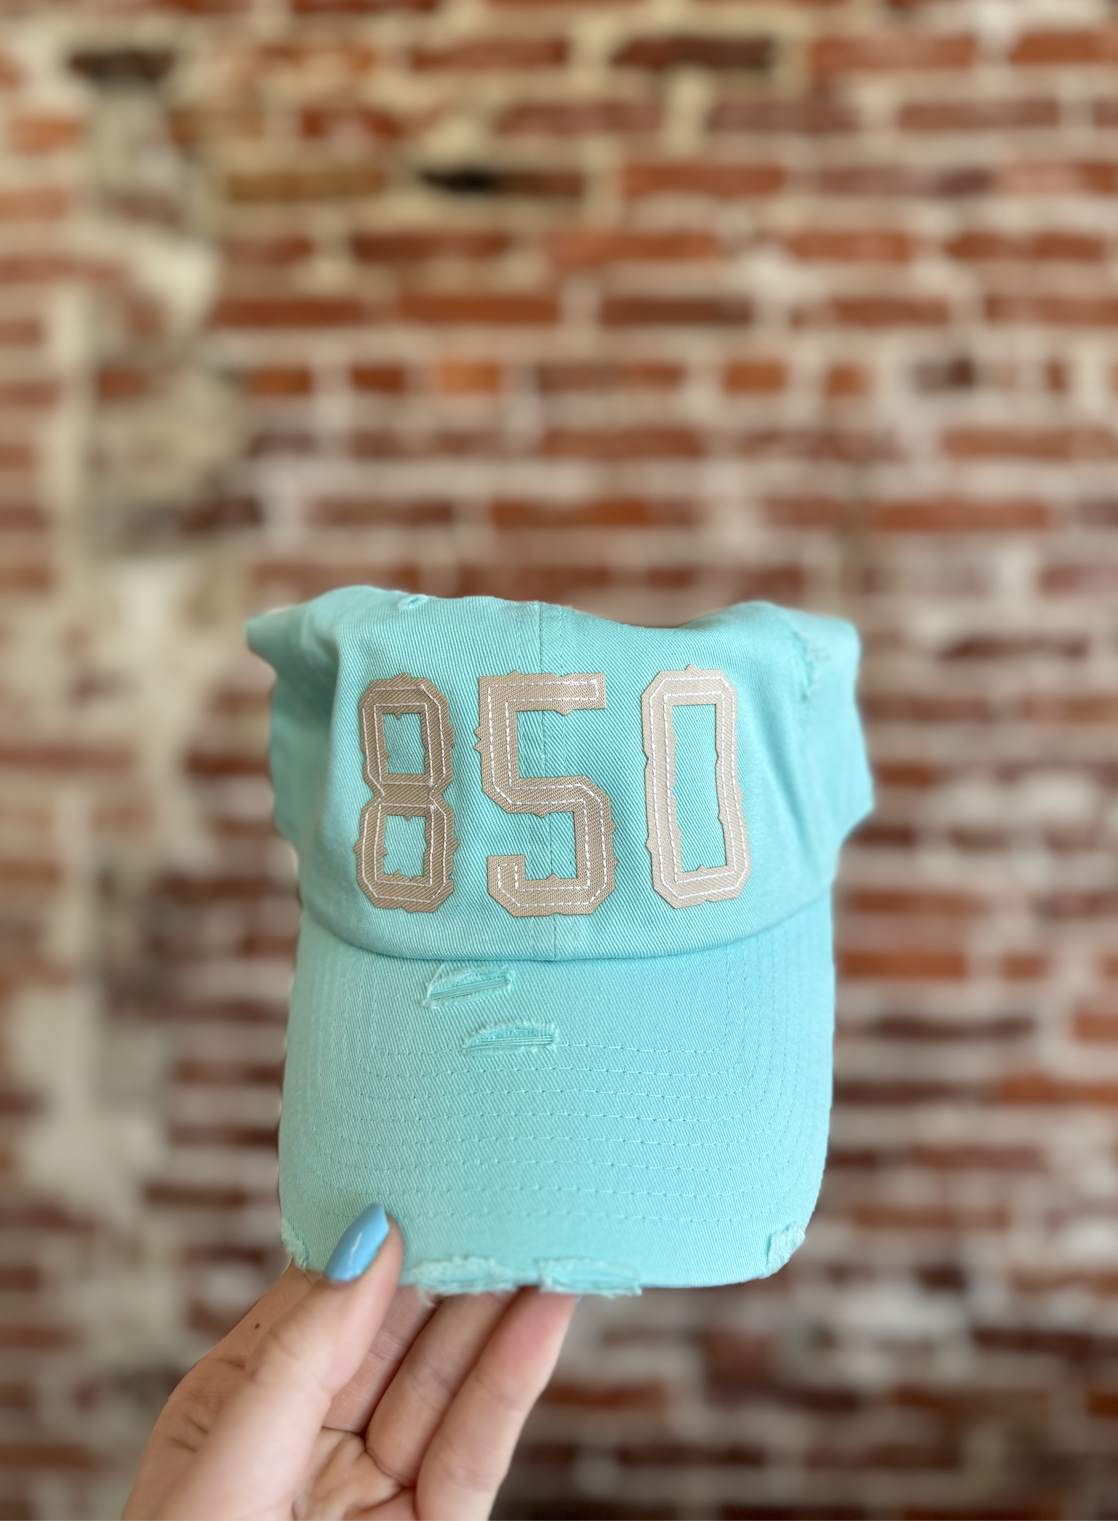 850 Hat